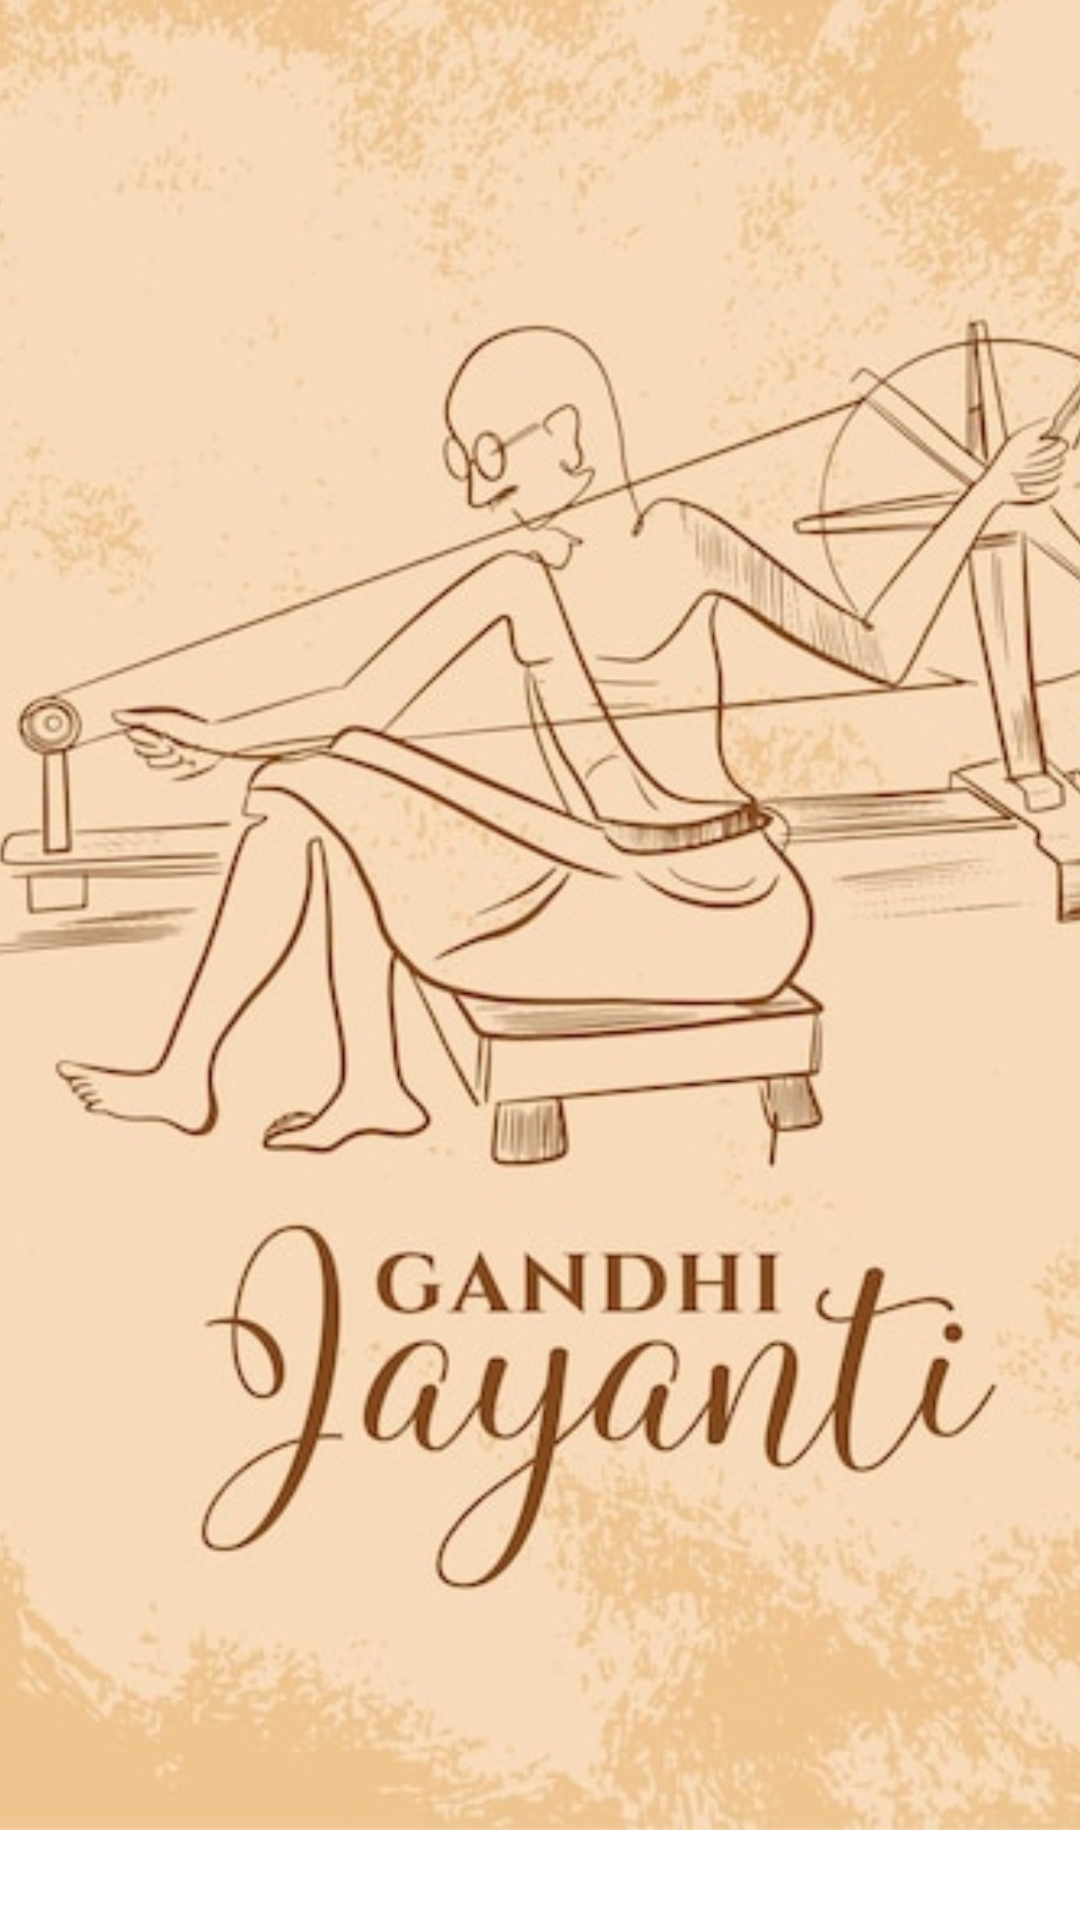 Gandhi Jayanti Quotes: आपकी जिंदगी बदल देंगे महात्मा गांधी के ये अनमोल विचार